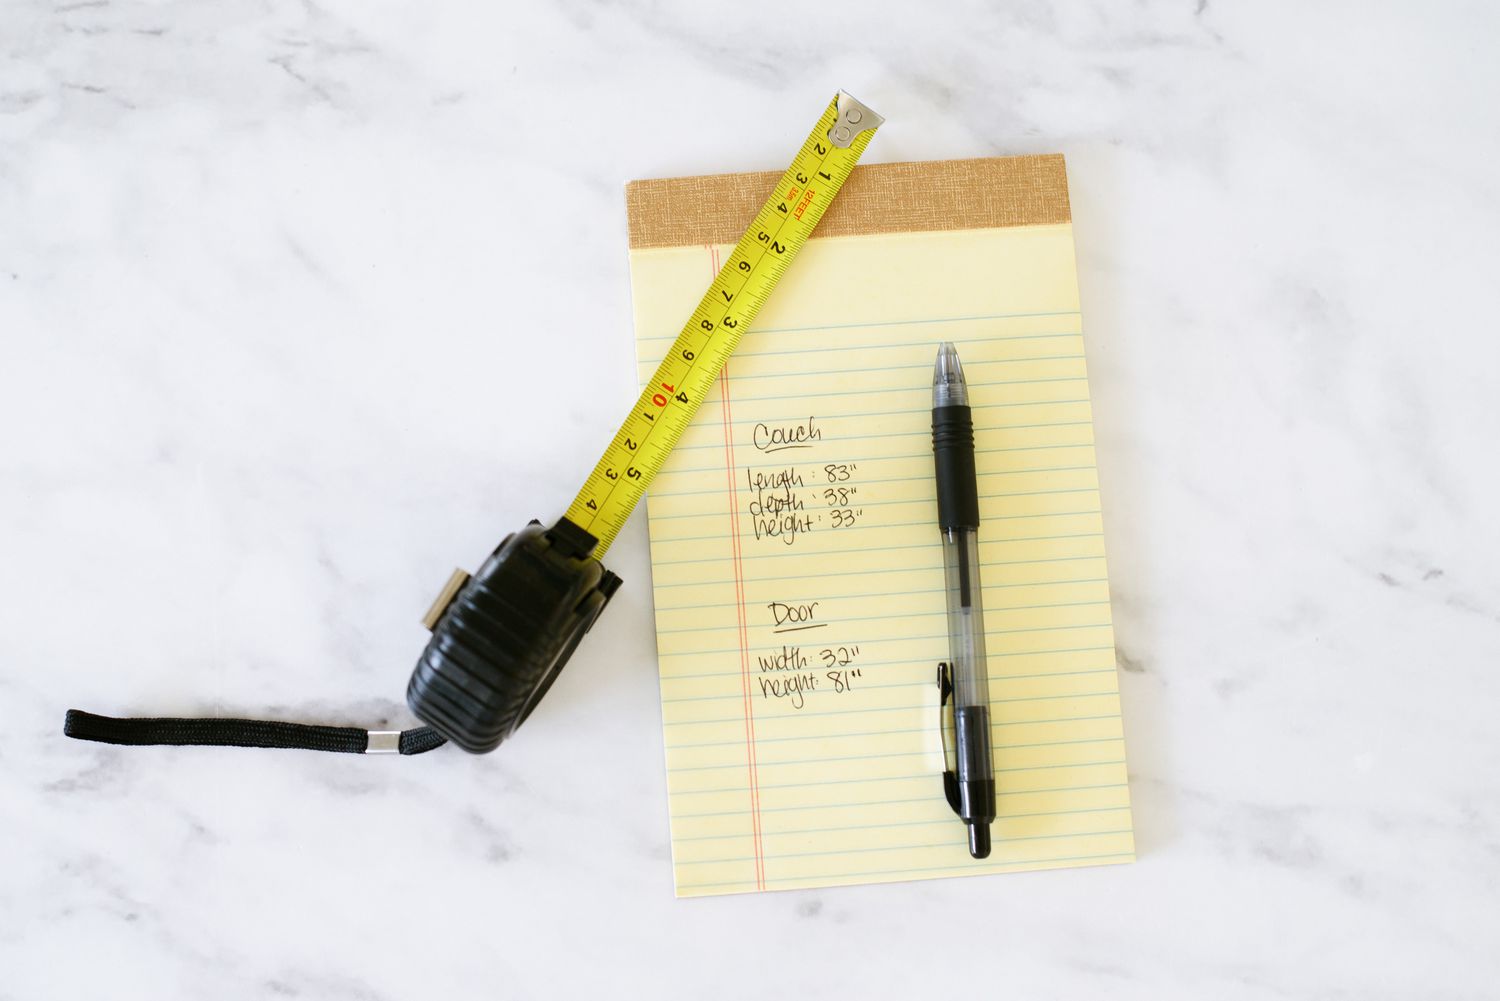 Medidas escritas em um bloco de notas amarelo com caneta e fita métrica